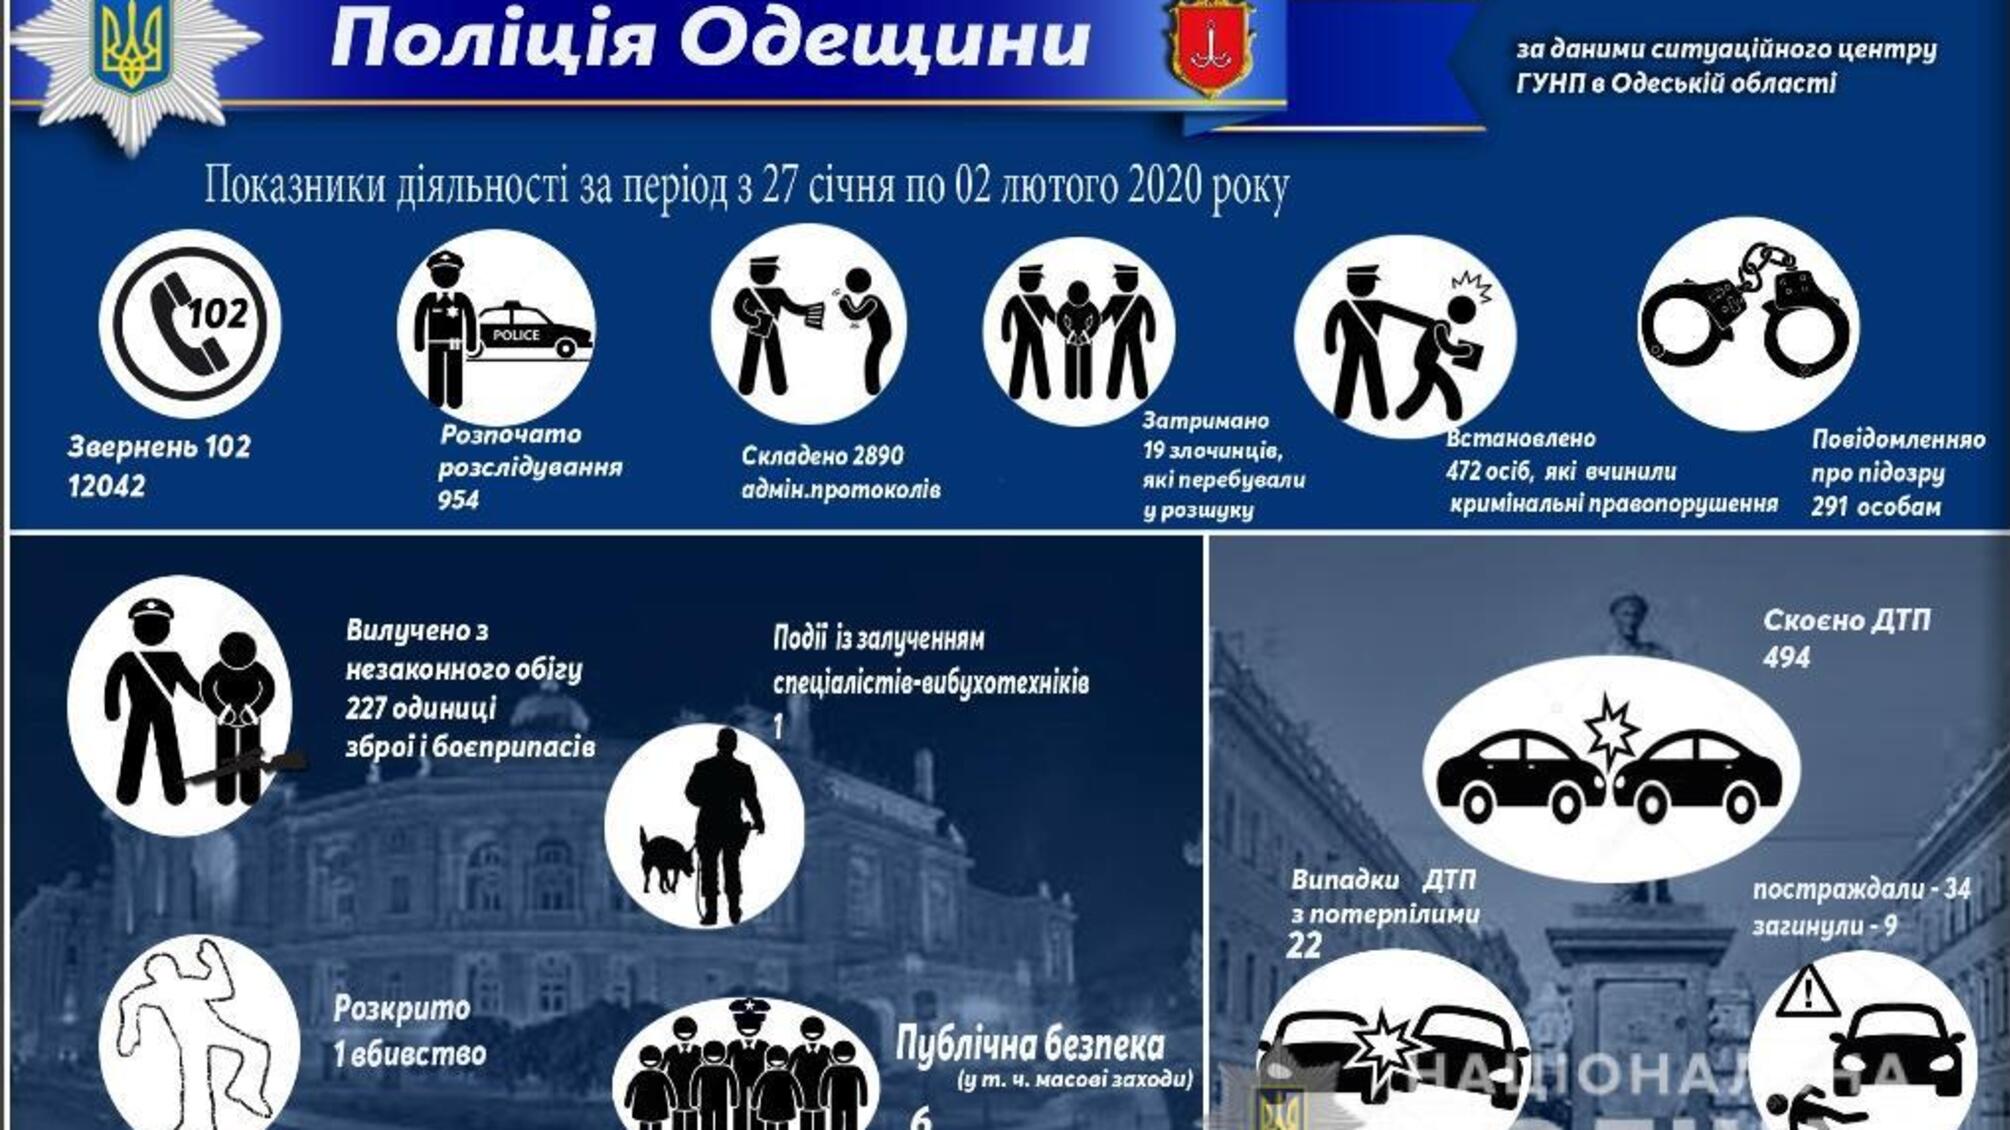 Результати оперативно-службової діяльності поліції Одещини за період з 27 січня по 02 лютого 2020 року